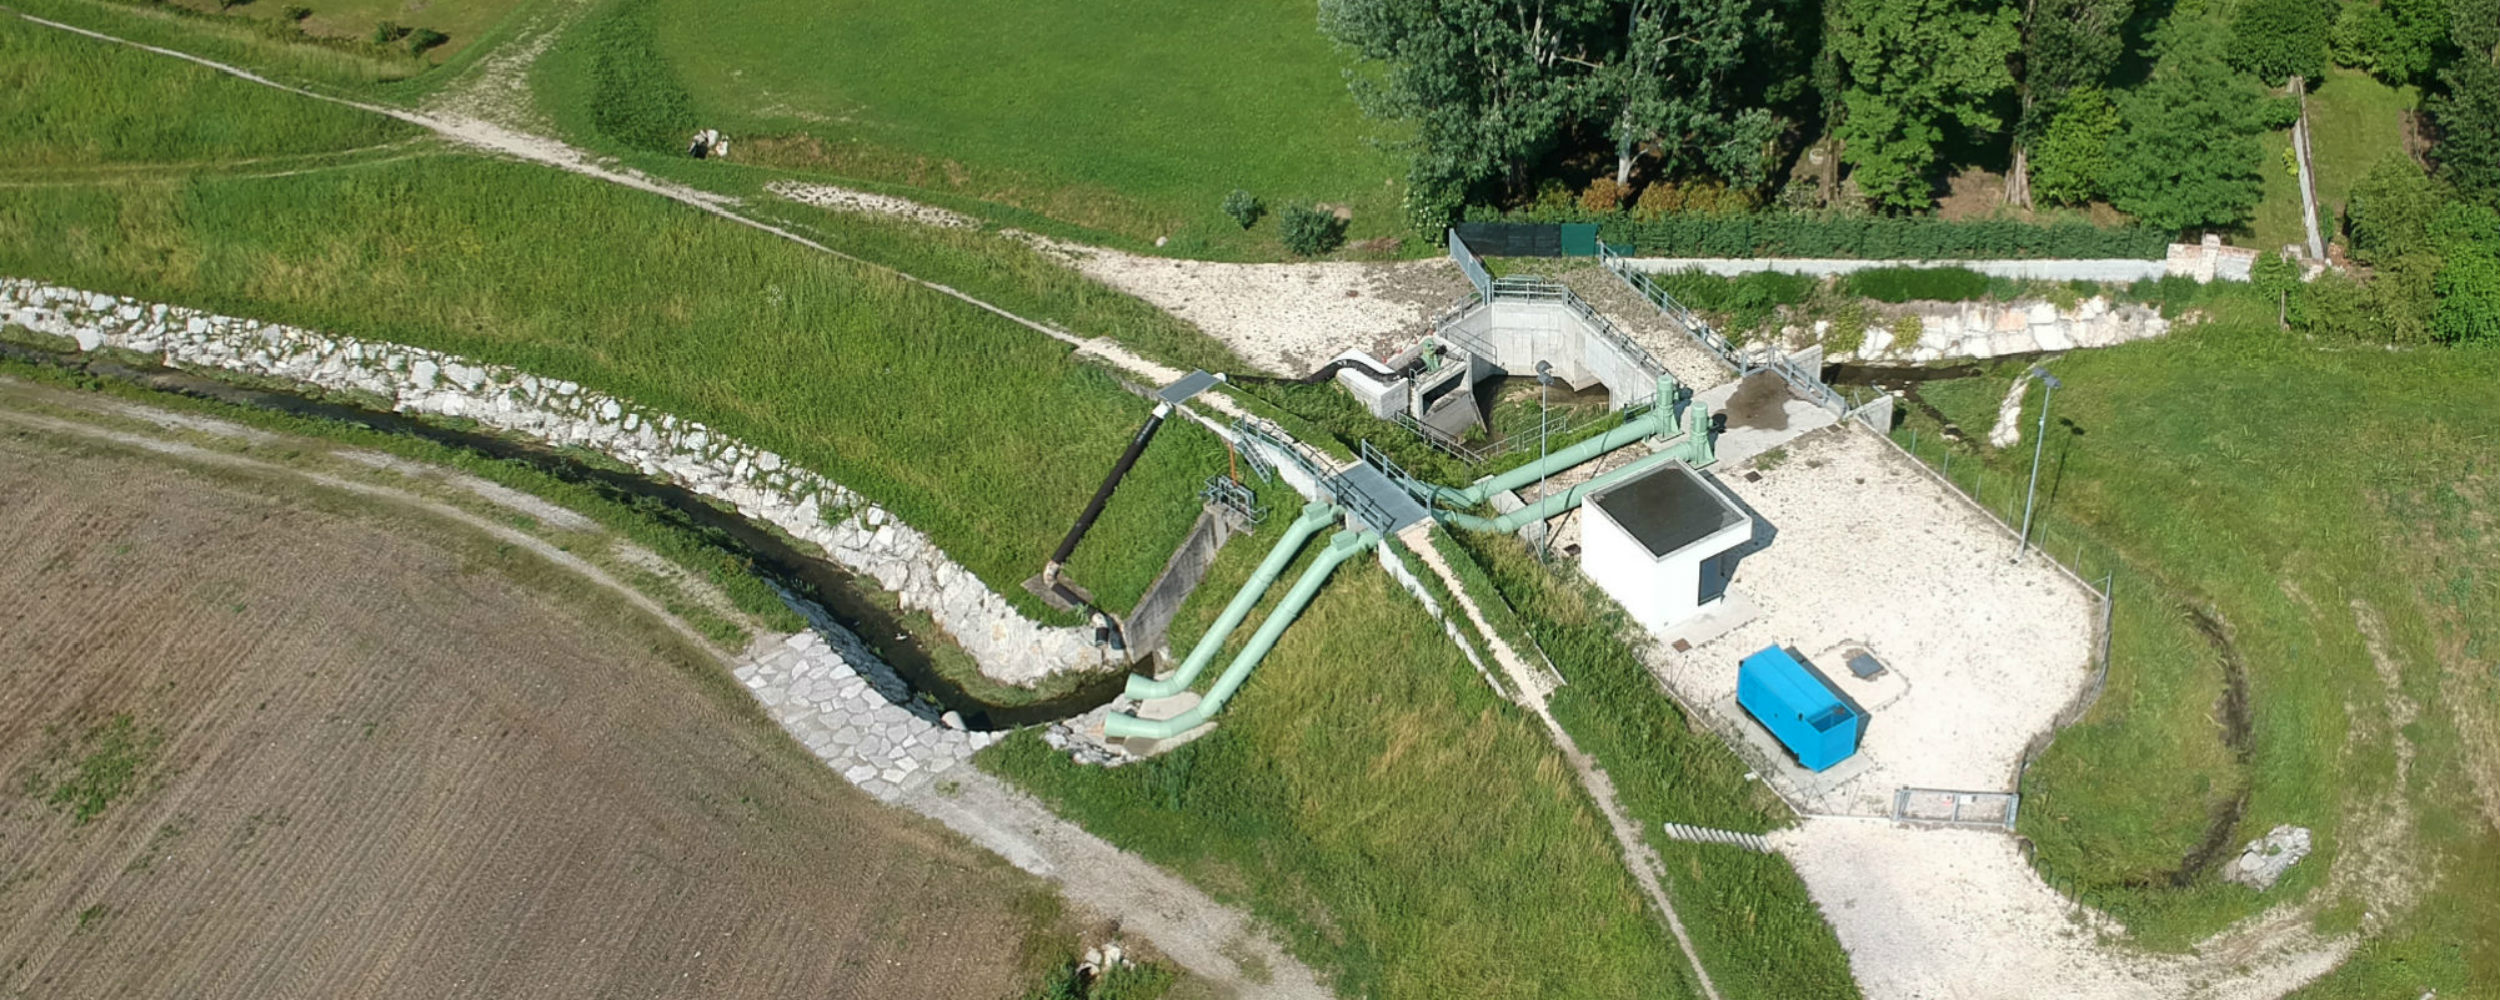 Impianti idrovori a Vallenoncello